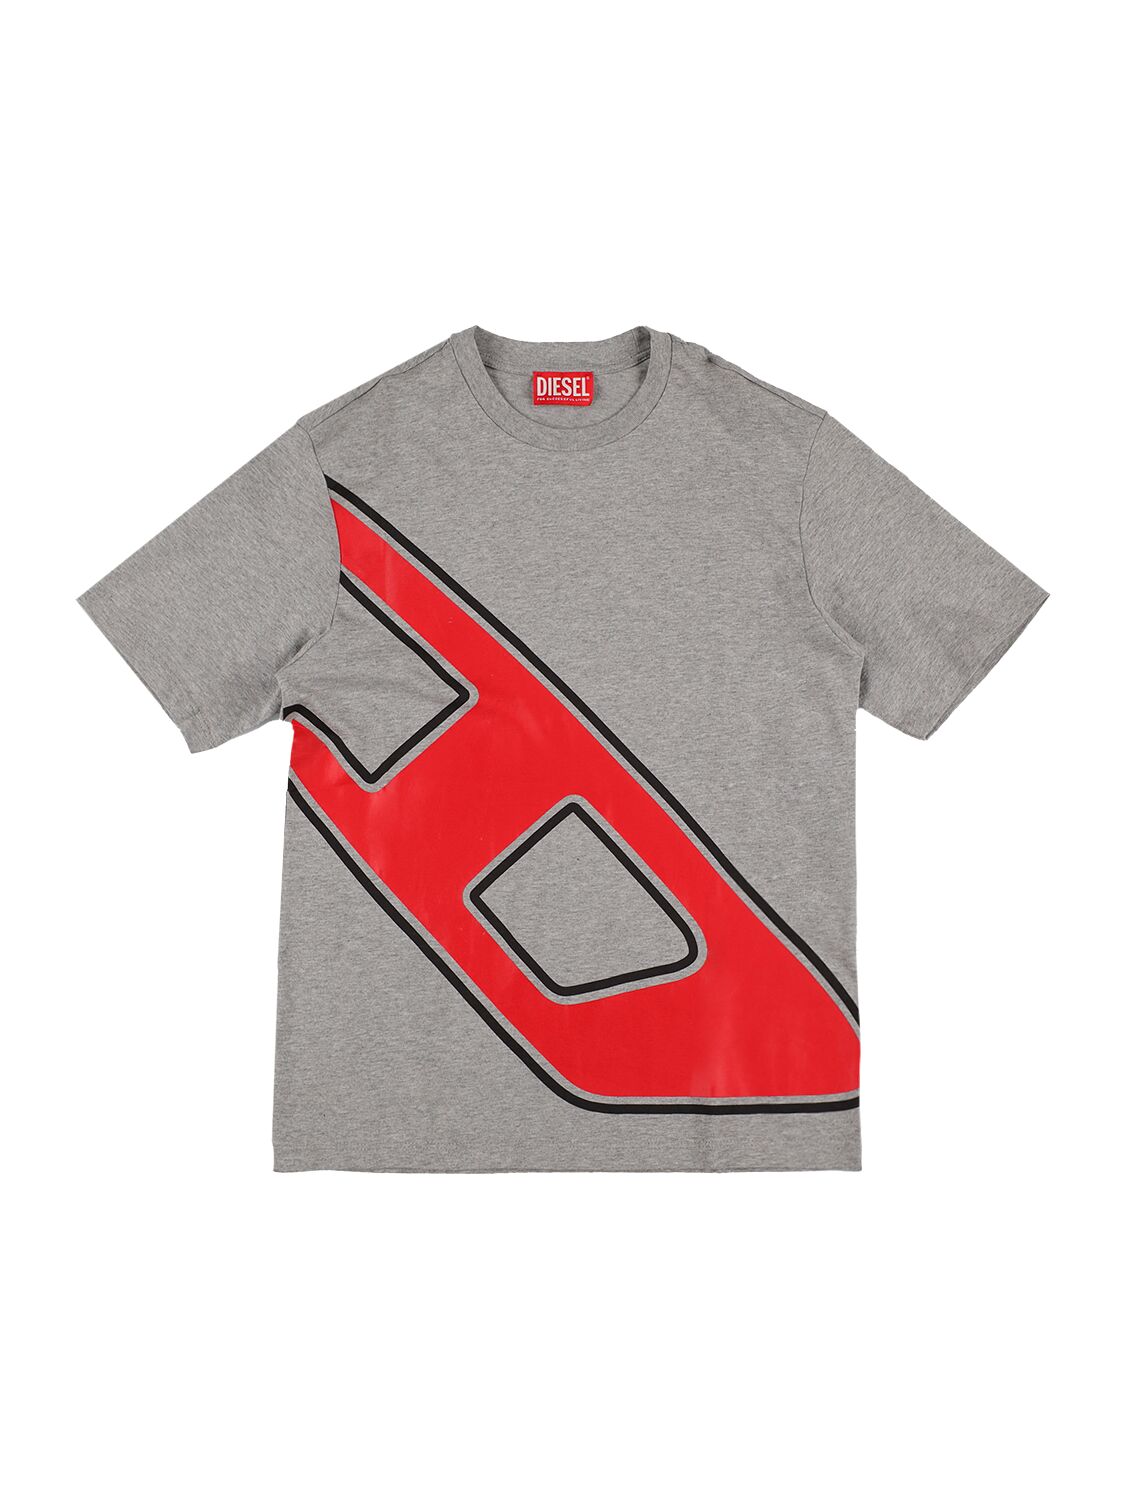 Diesel Kids' Macro D Logo T-shirt In Grey